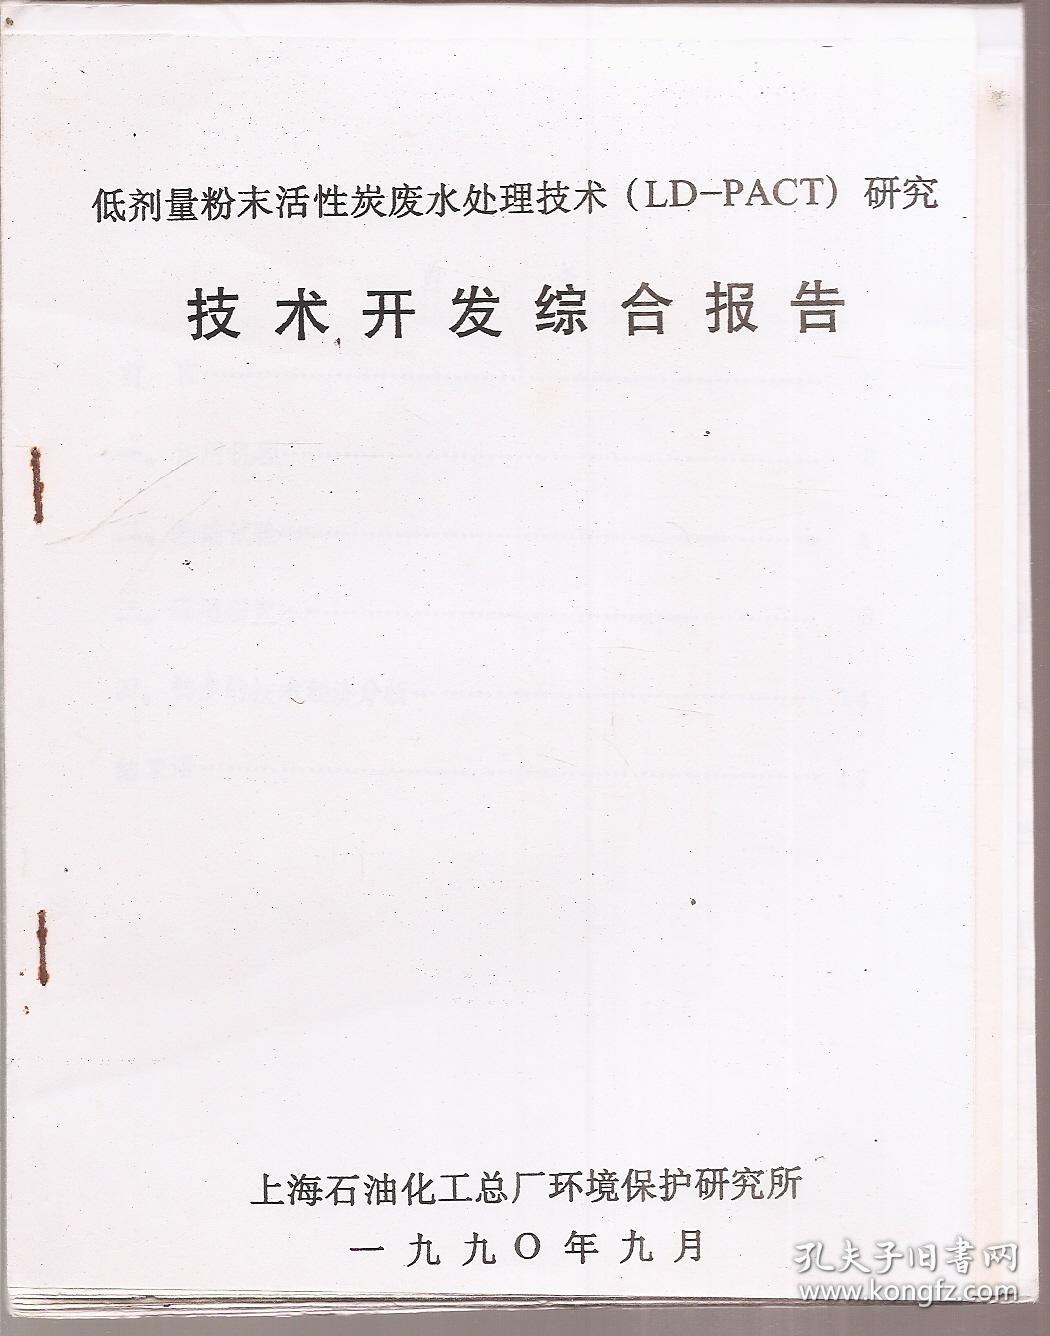 低剂量粉末活性炭废水处理技术(LD-PACT)研究